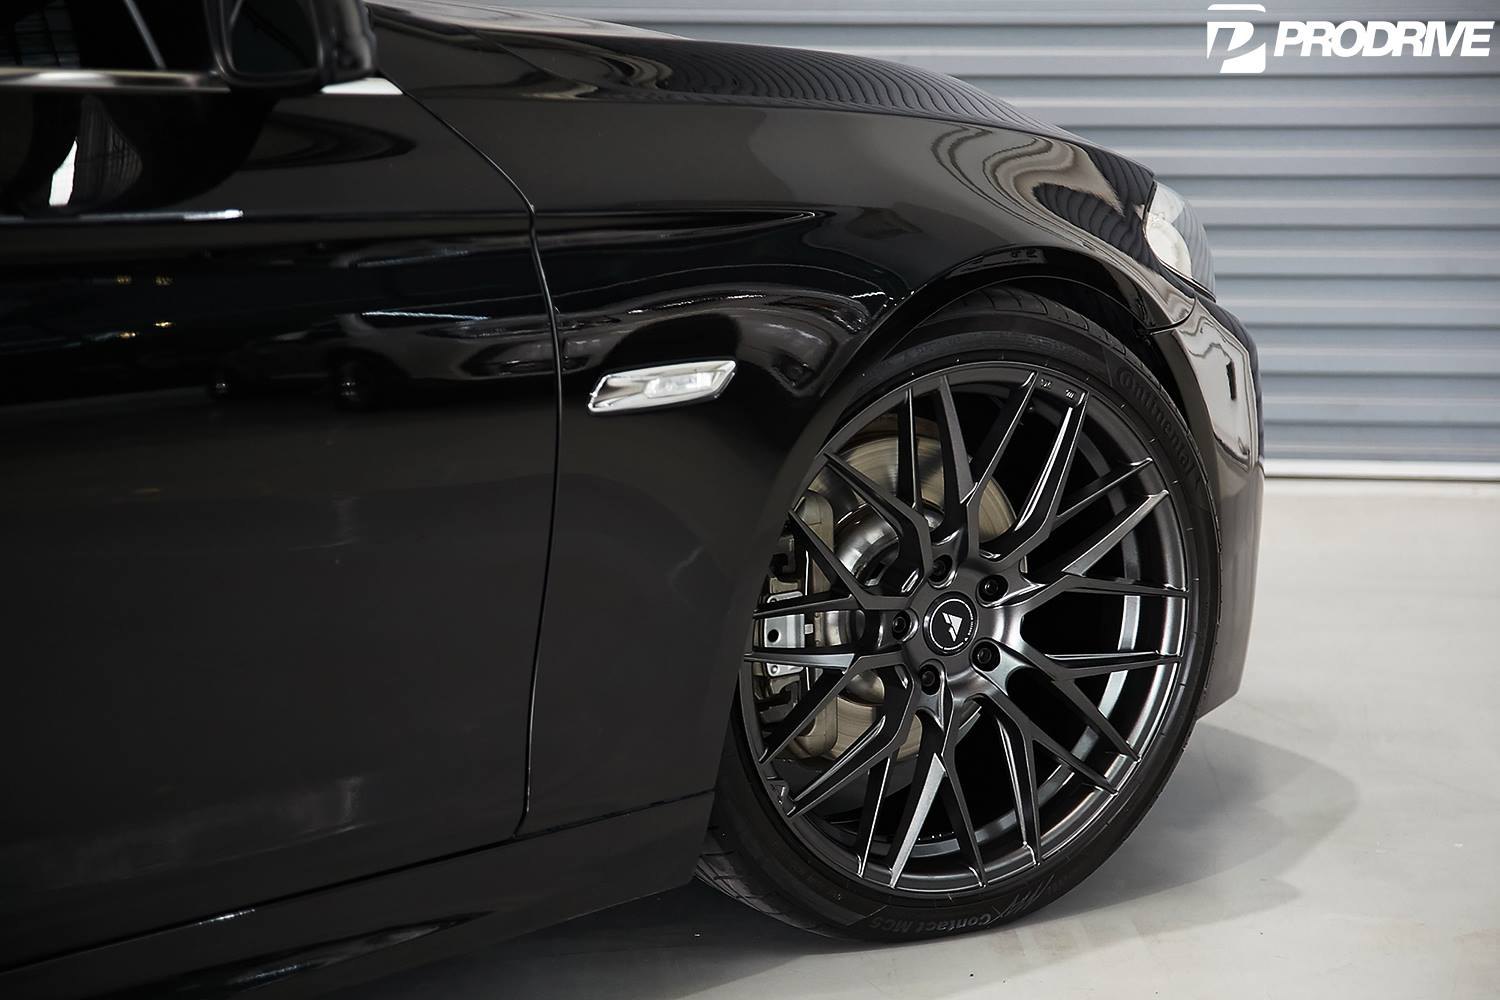 Vorsteiner Wheels on Black BMW 5-Series - Photo by Vorstiner